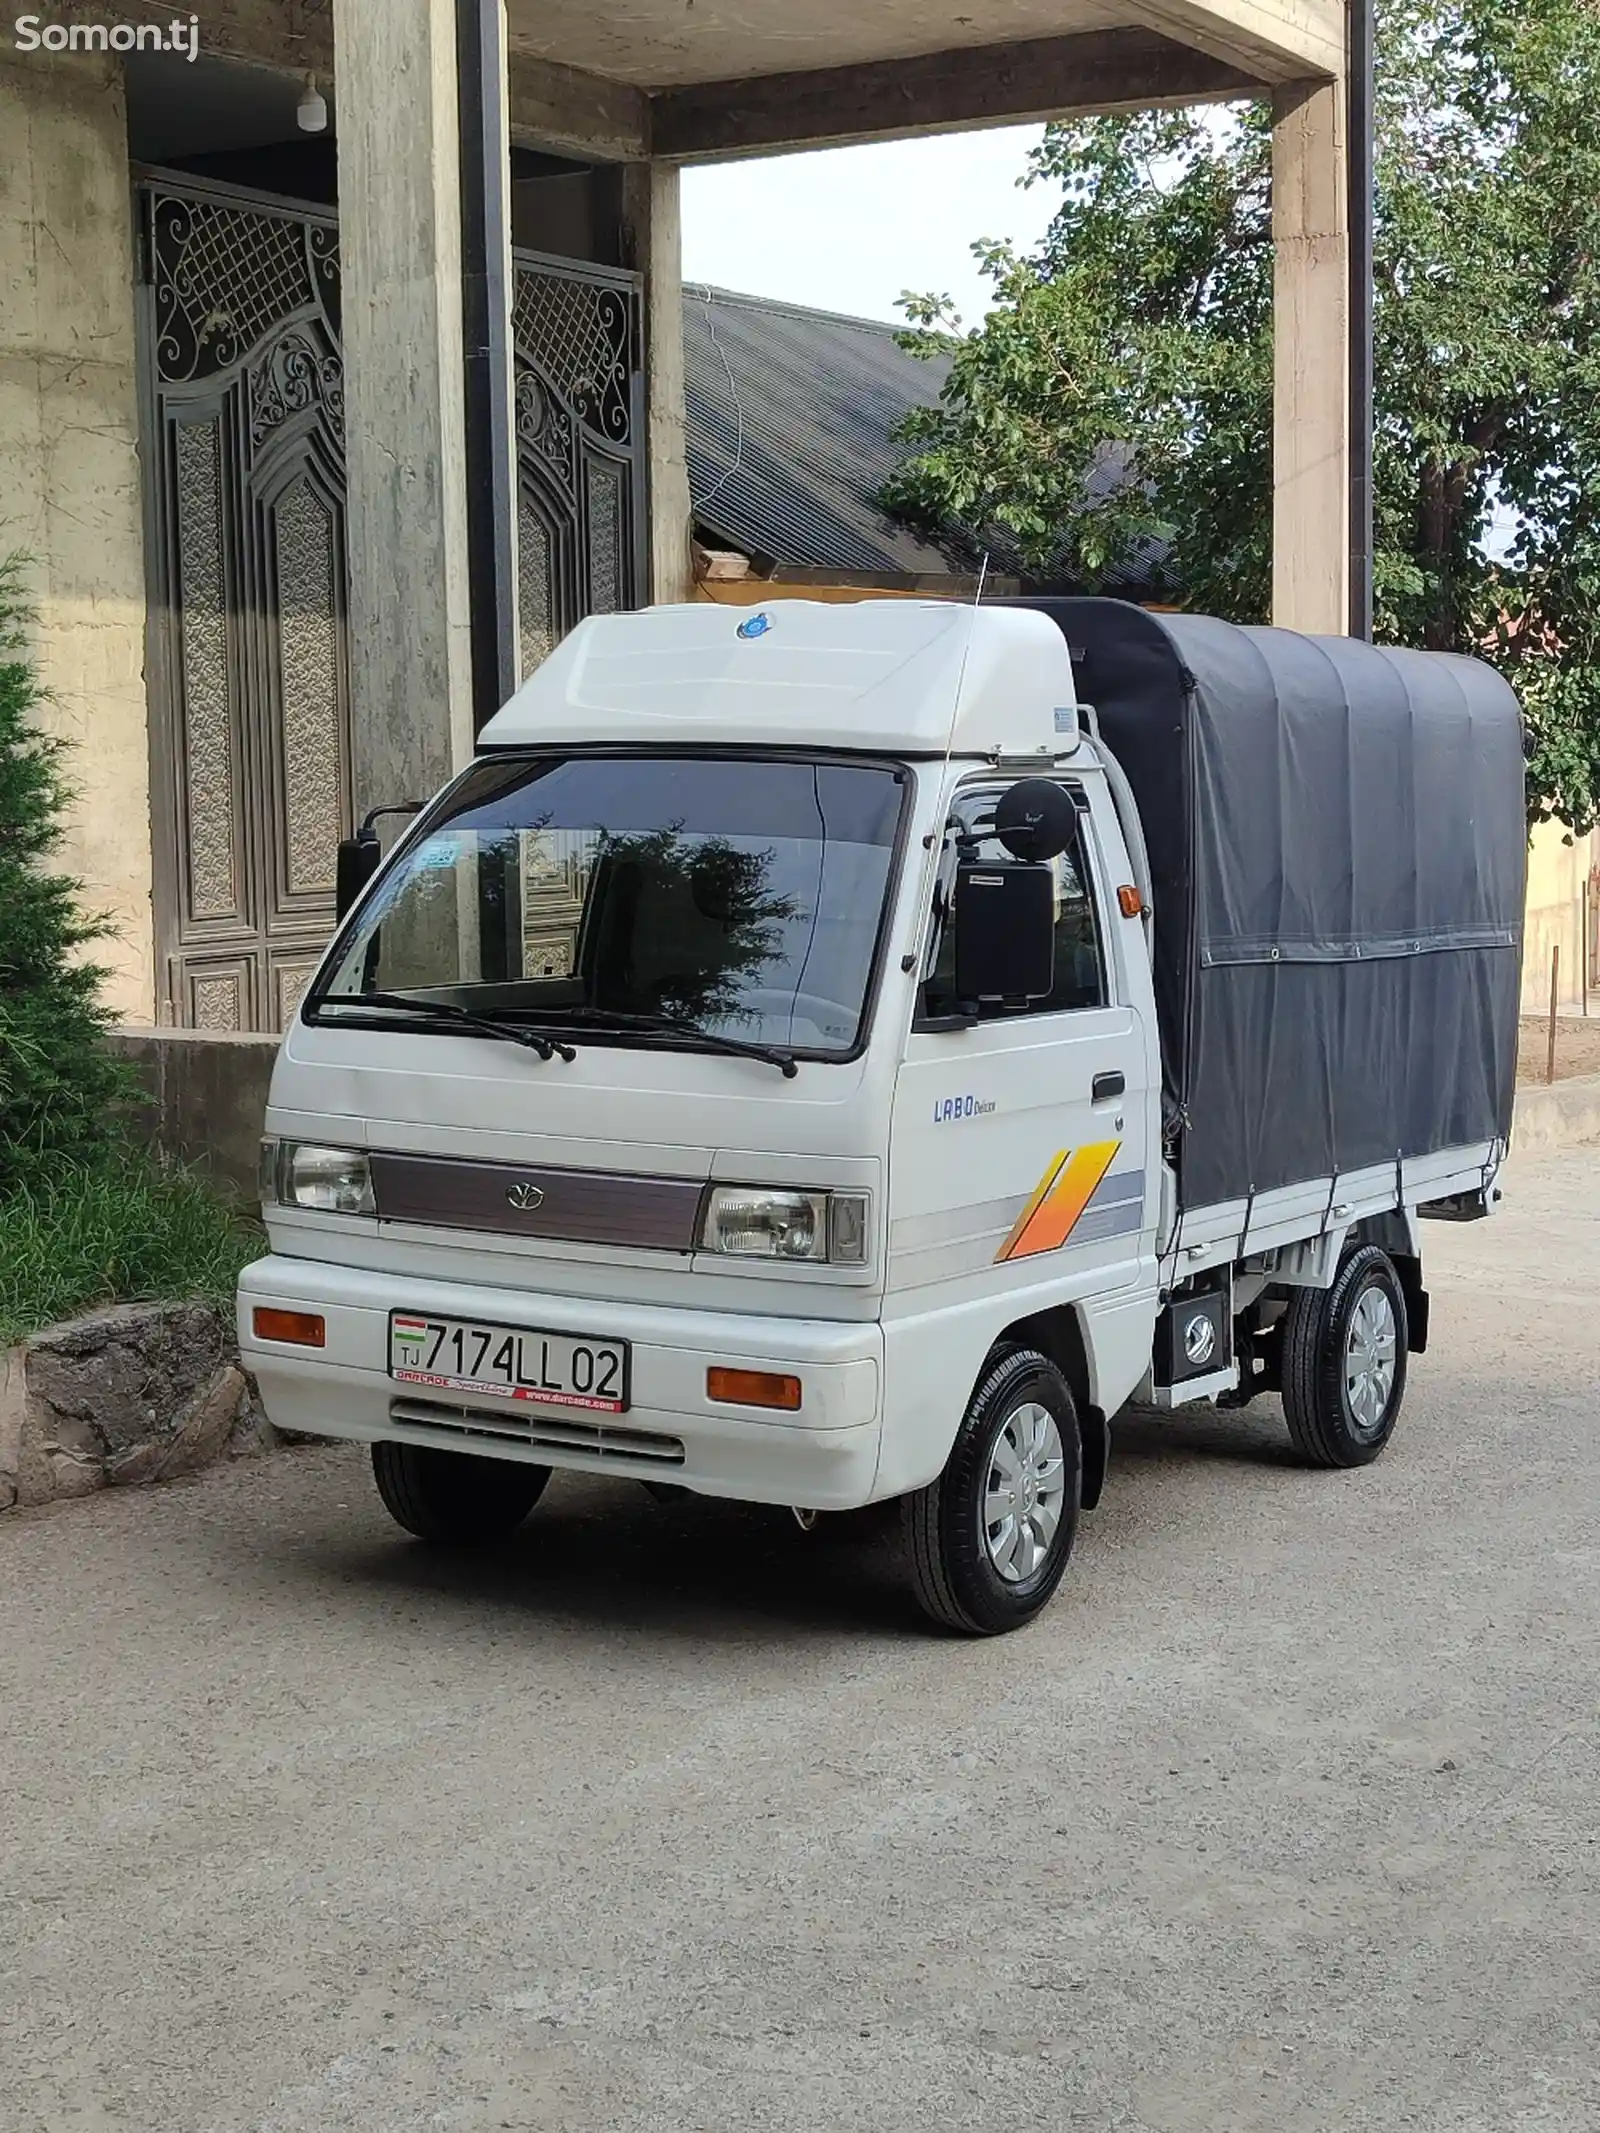 Бортовой автомобиль Daewoo Labo, 2013-5